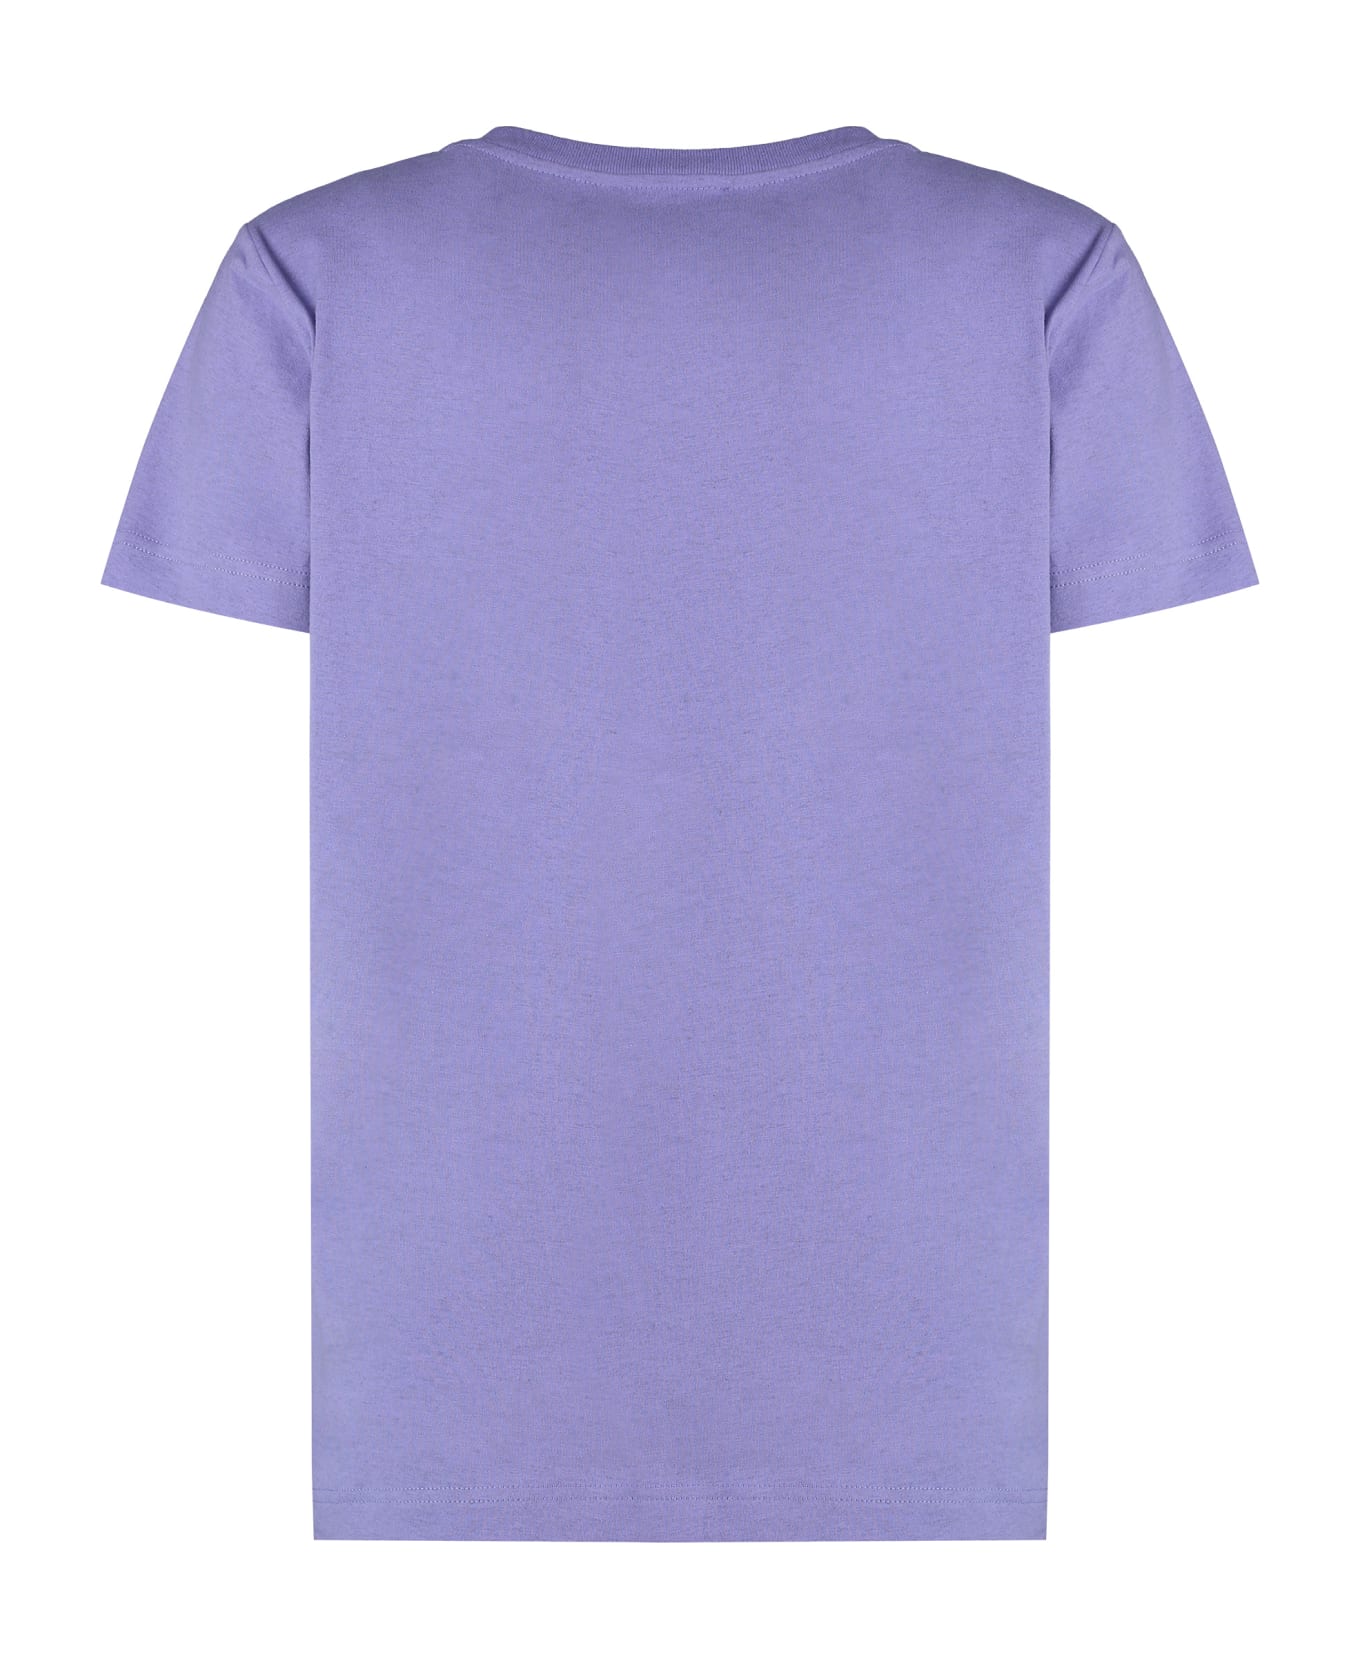 A.P.C. Item Cotton T-shirt - Lilac Tシャツ